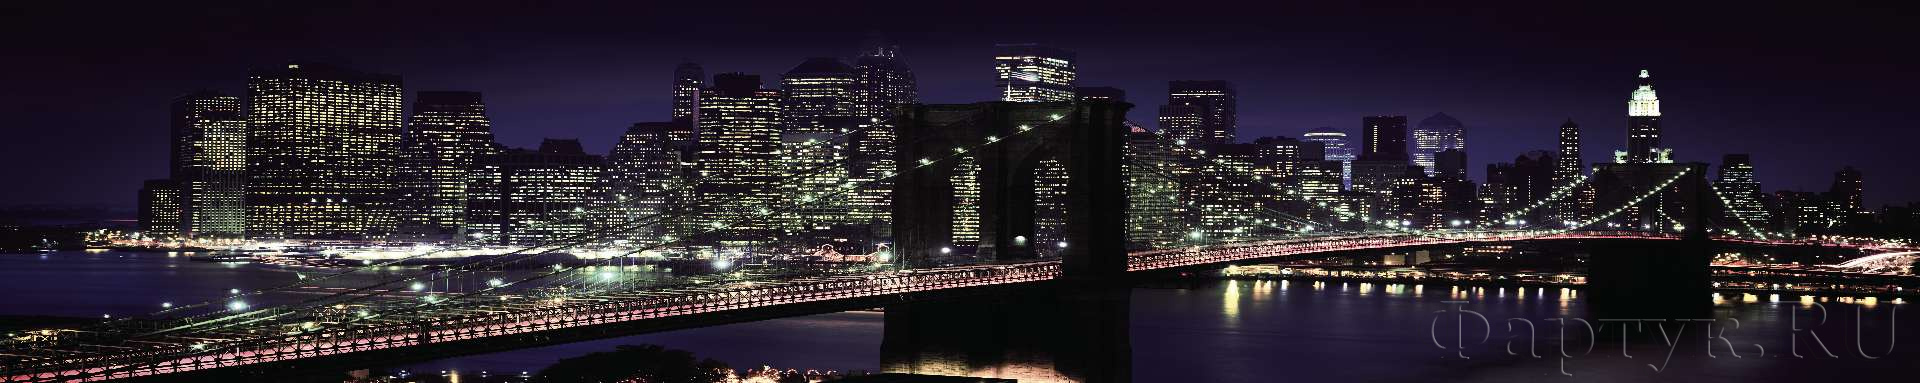 Бруклинский мост с огнями в фиолетовых оттенках